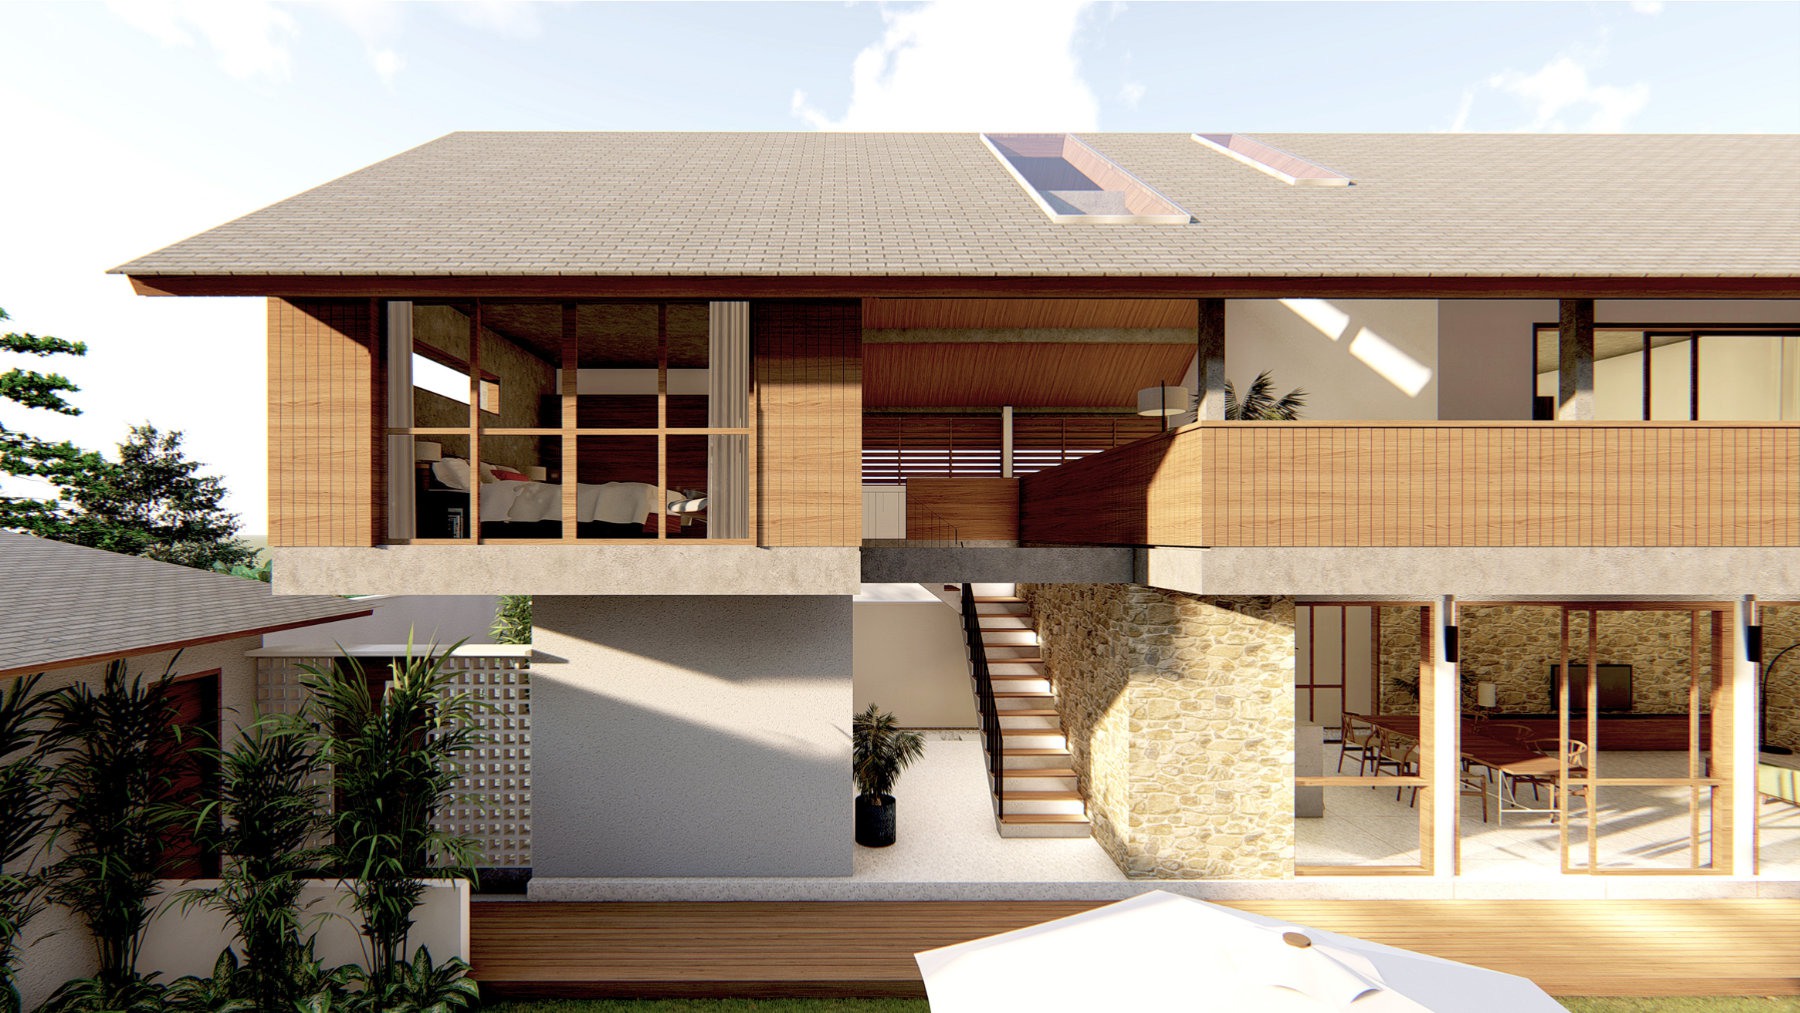 Design Assembly - Cepaka Villa - Bali Architect - Interior Design - Bali Villa - Building Facade